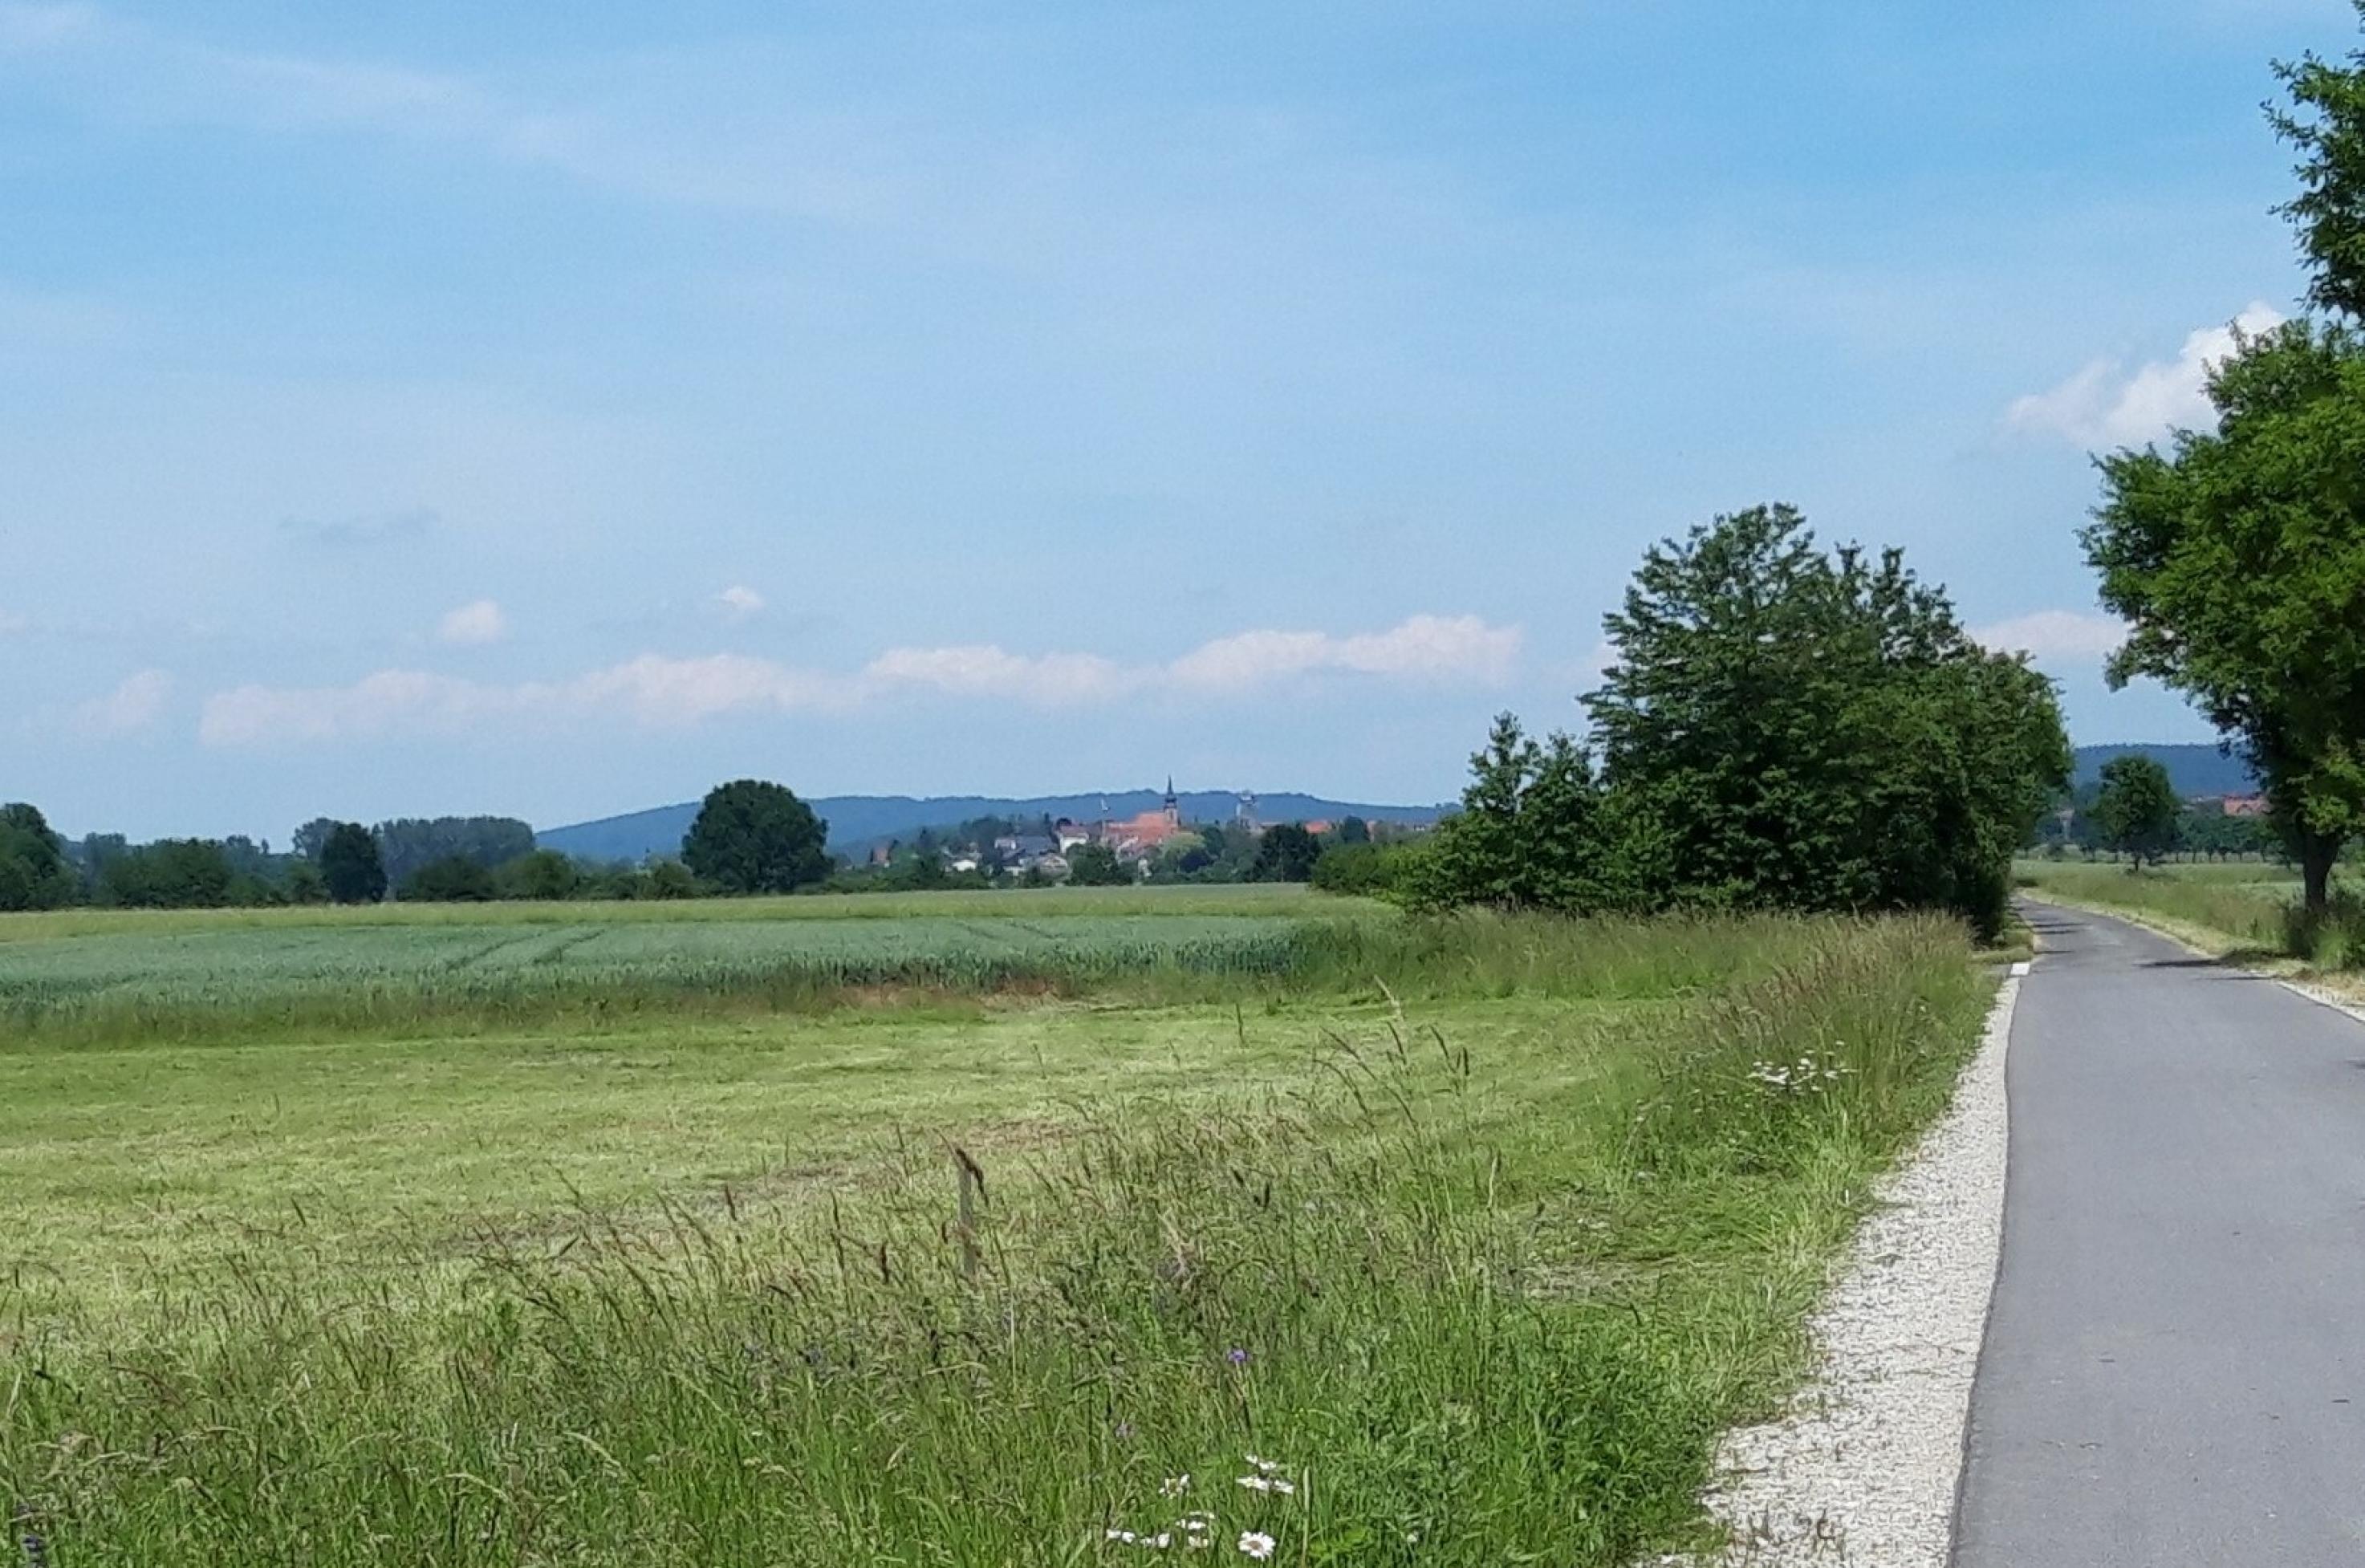 Am Horizont über Feld und Radweg heben sich vor einem Höhenzug die Dorfkirche sowie einige Häuser ab.